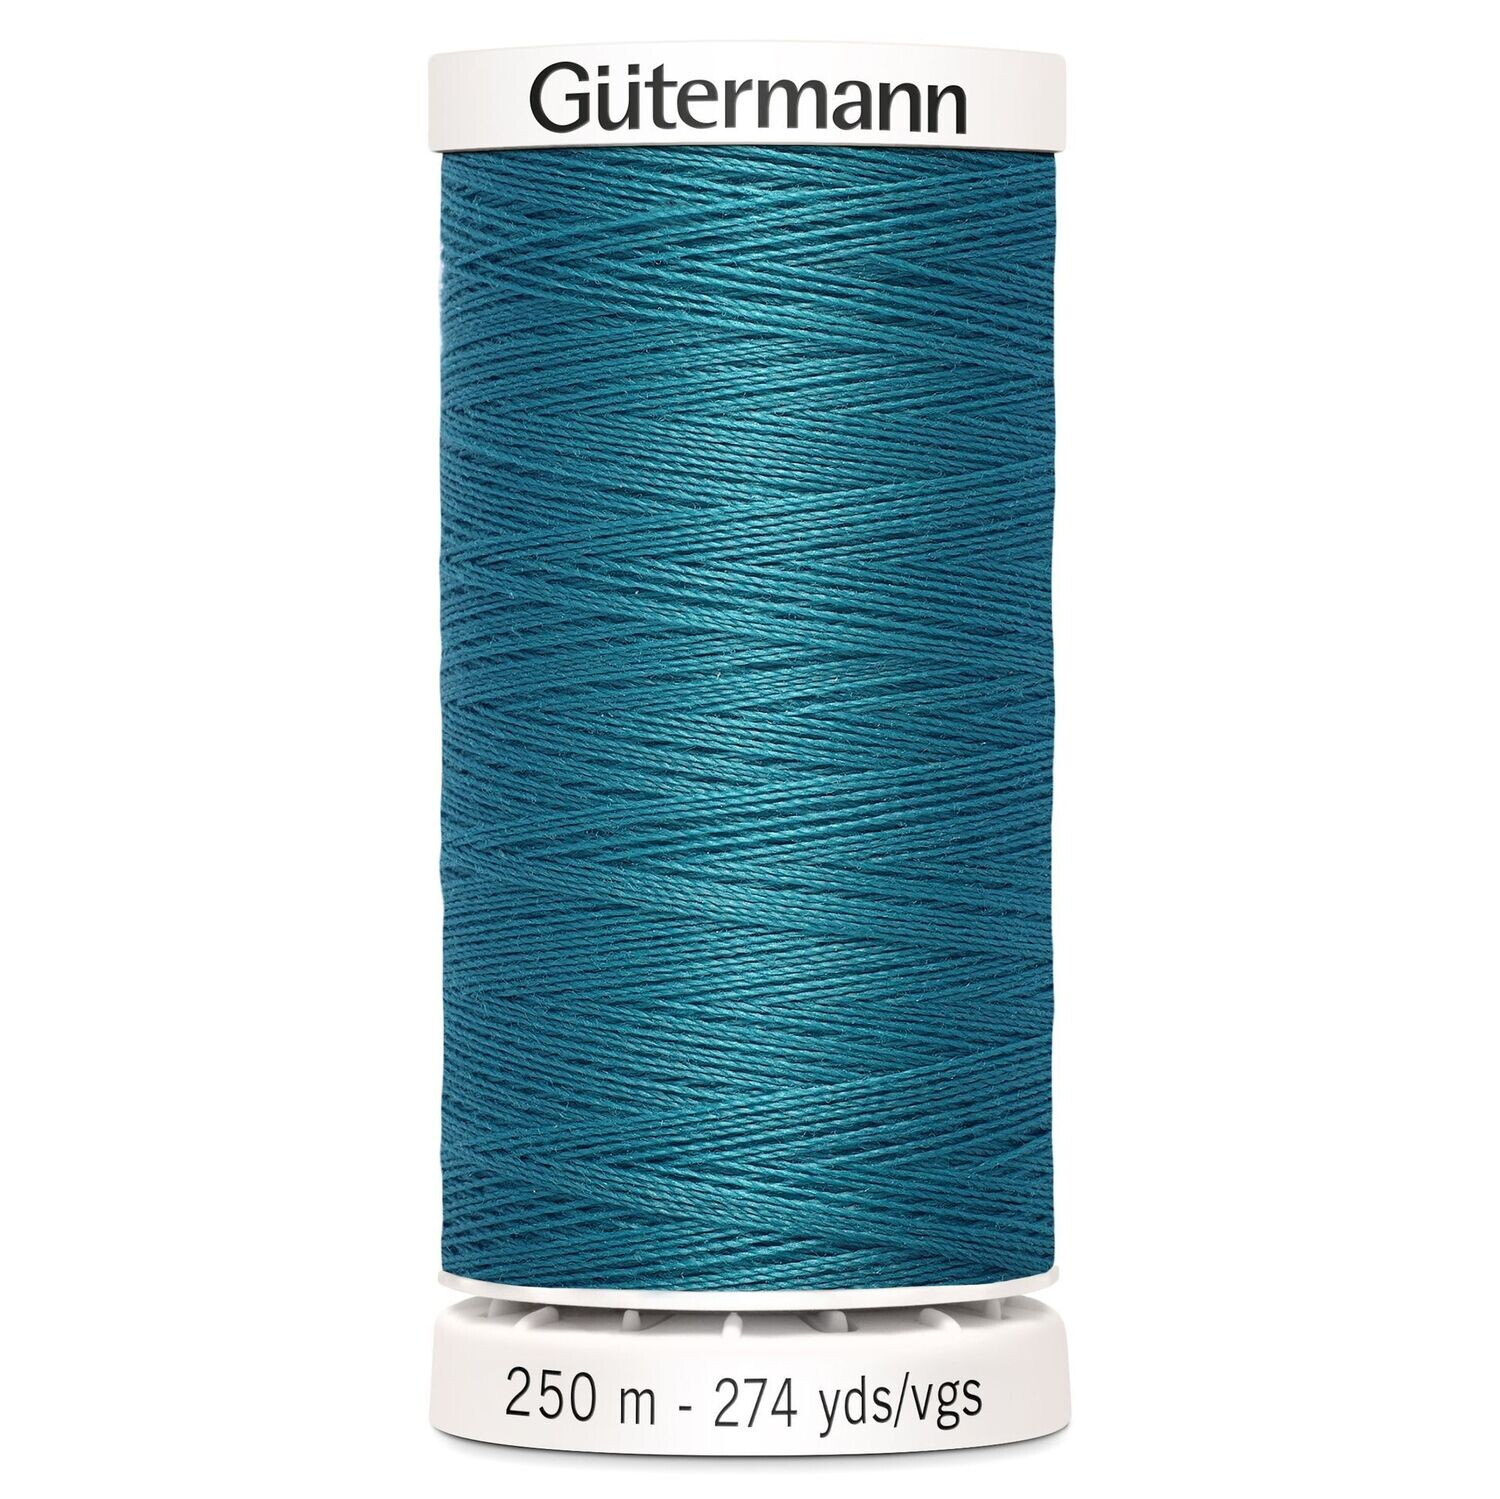 Sew All Thread 250m - Gutermann - Colour 189